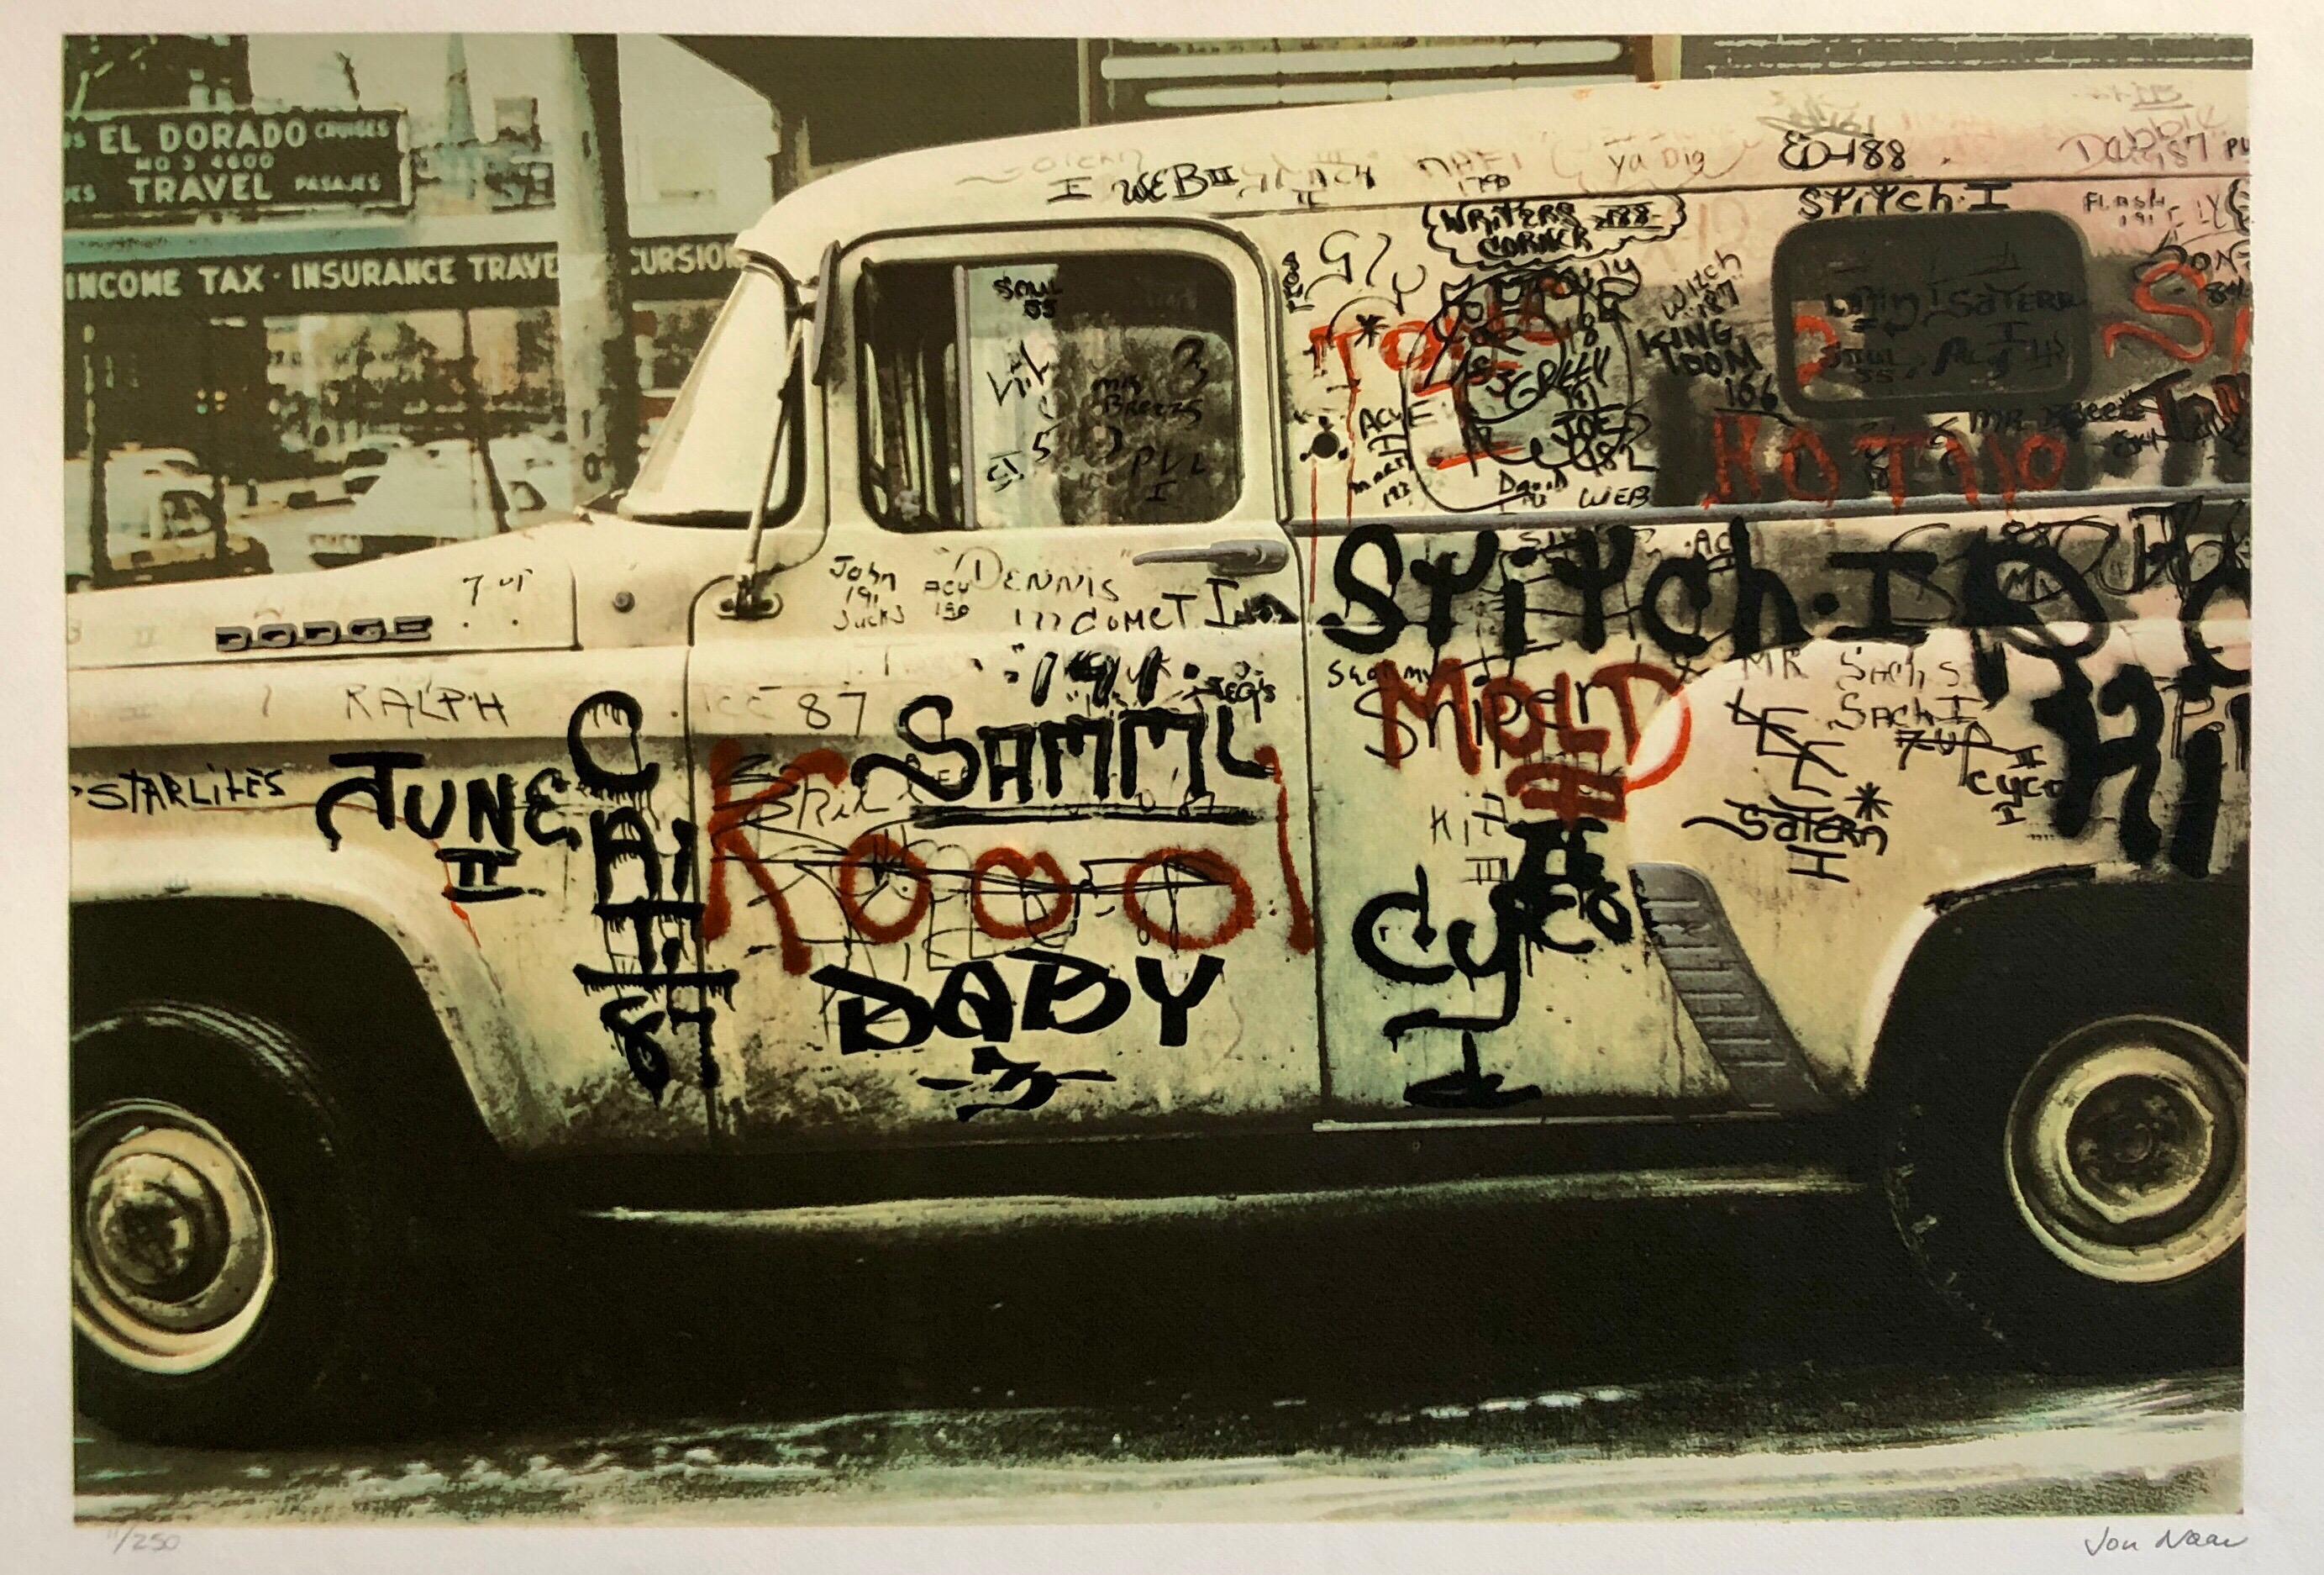 Jon Naar Abstract Print - Graffiti Art Photograph Silkscreen Print Truck New York City 1970s Pop Art